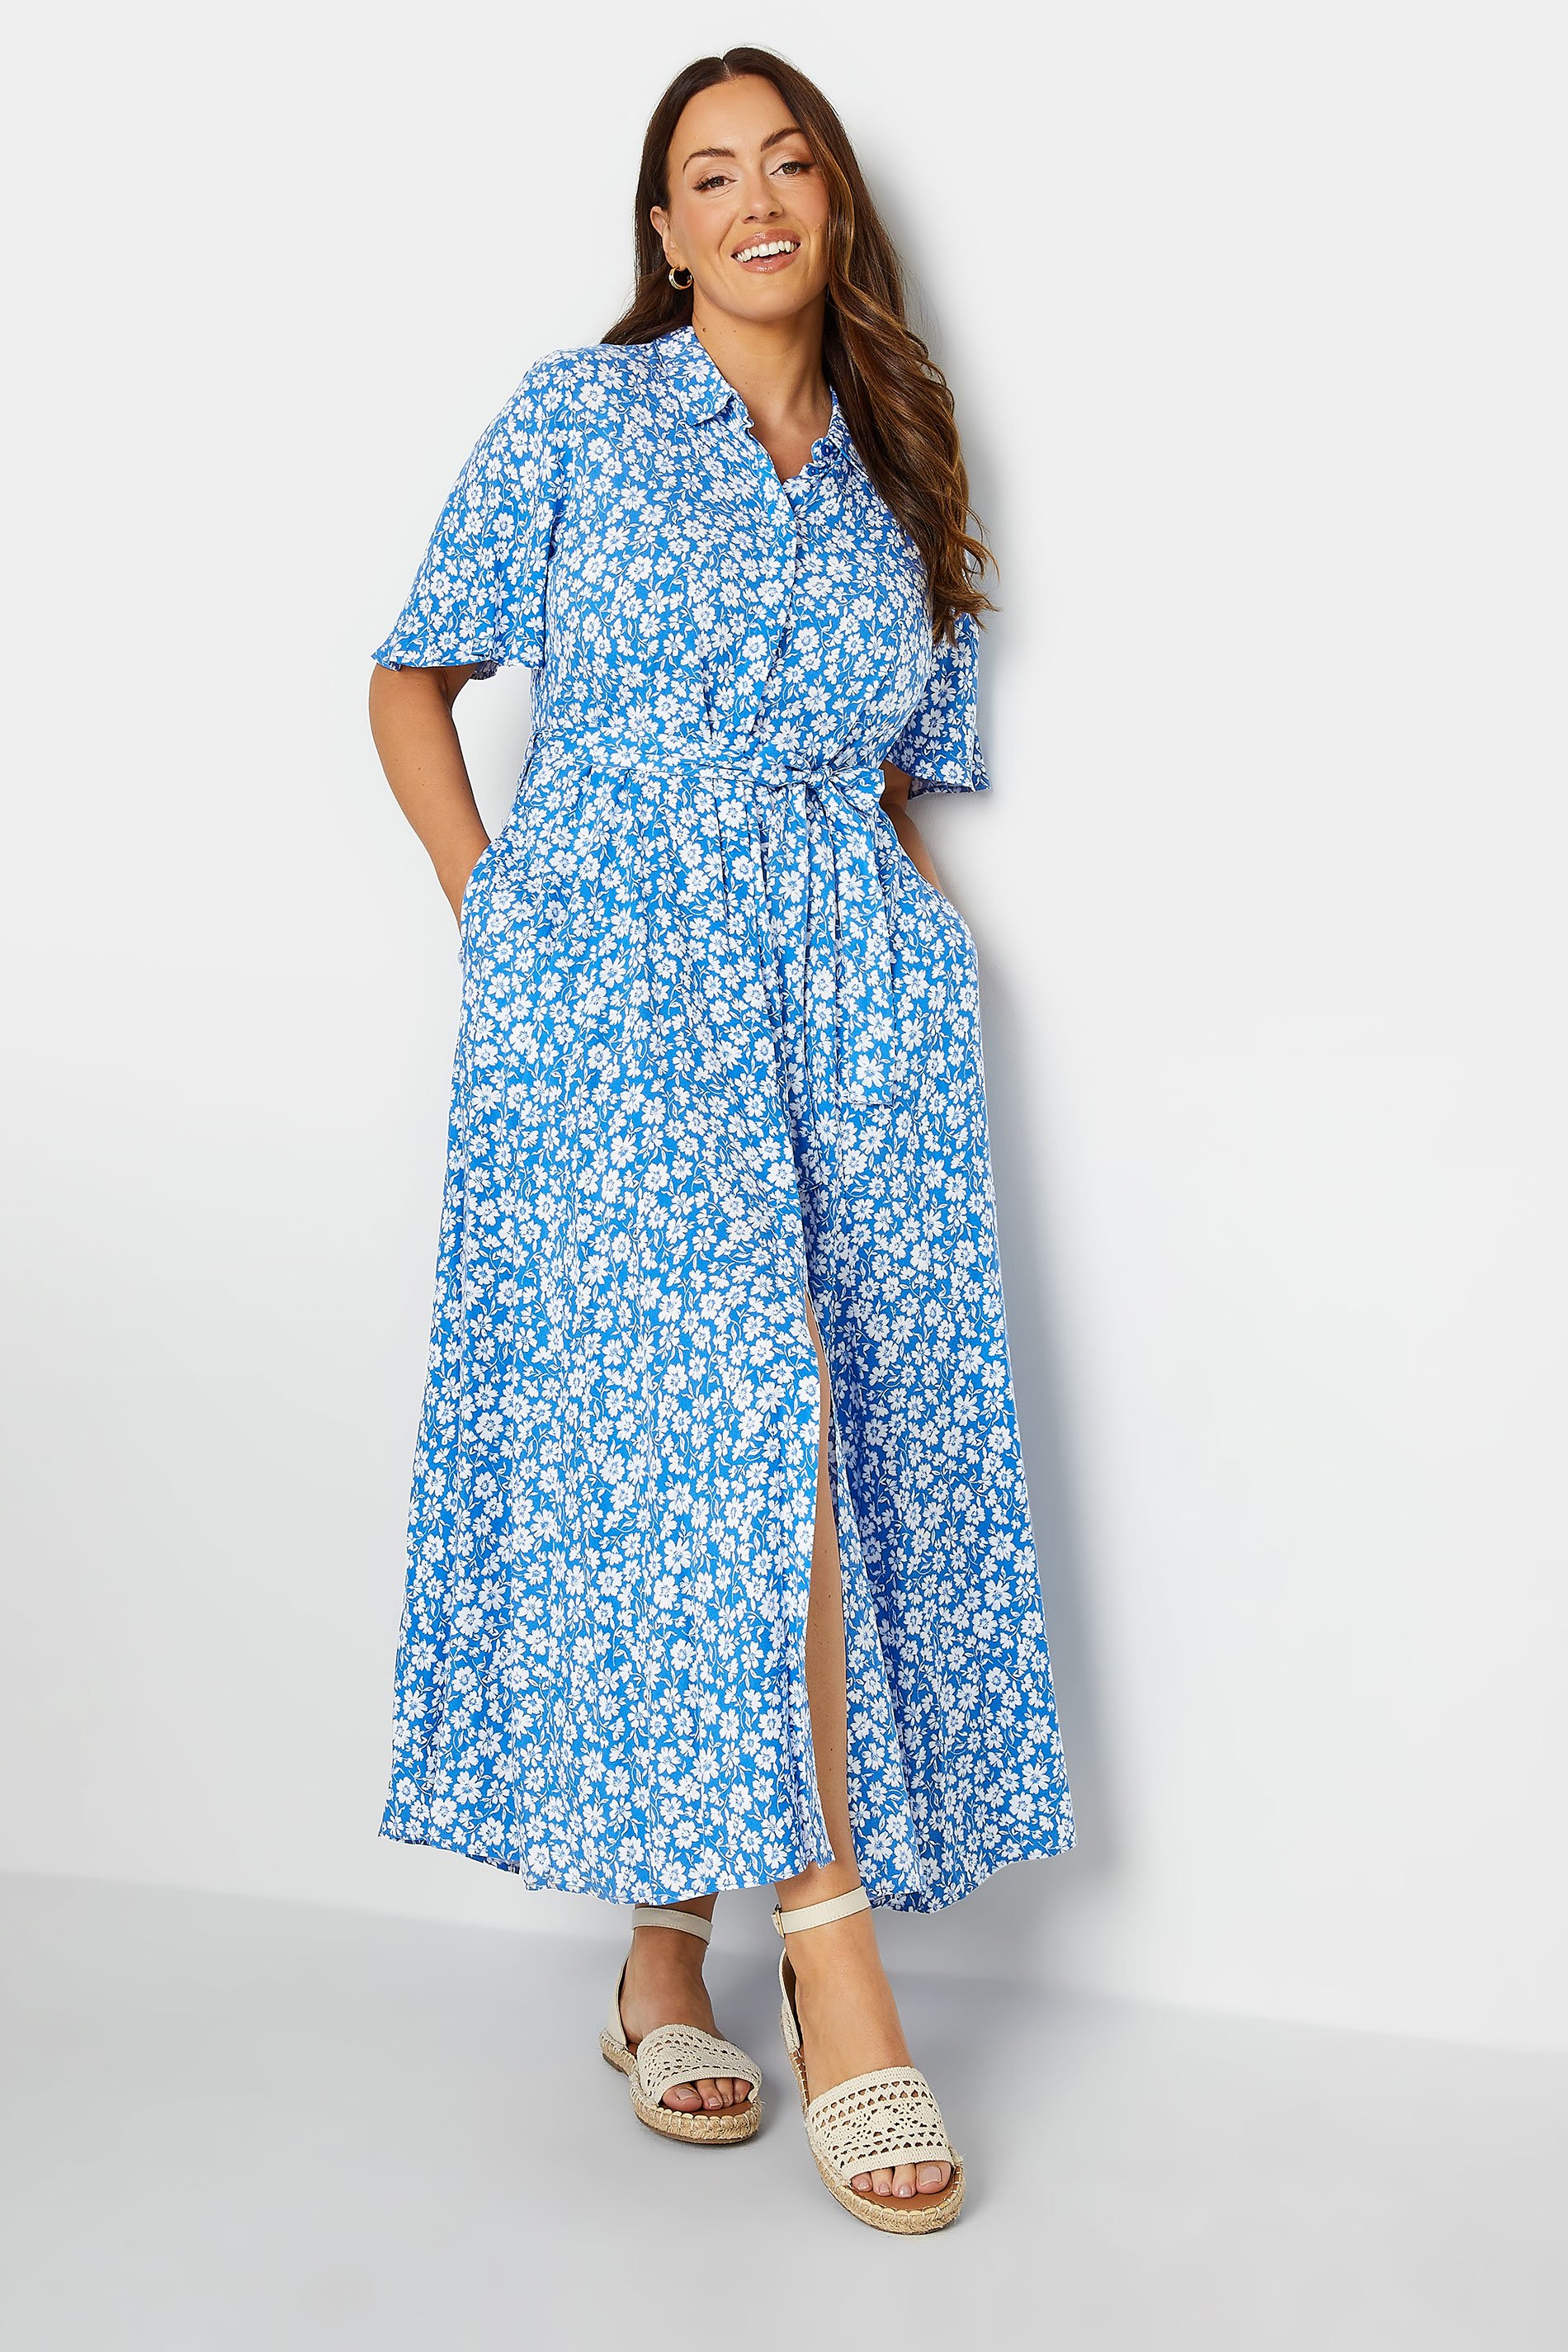 M&Co Blue Floral Print Maxi Shirt Dress | M&Co 1